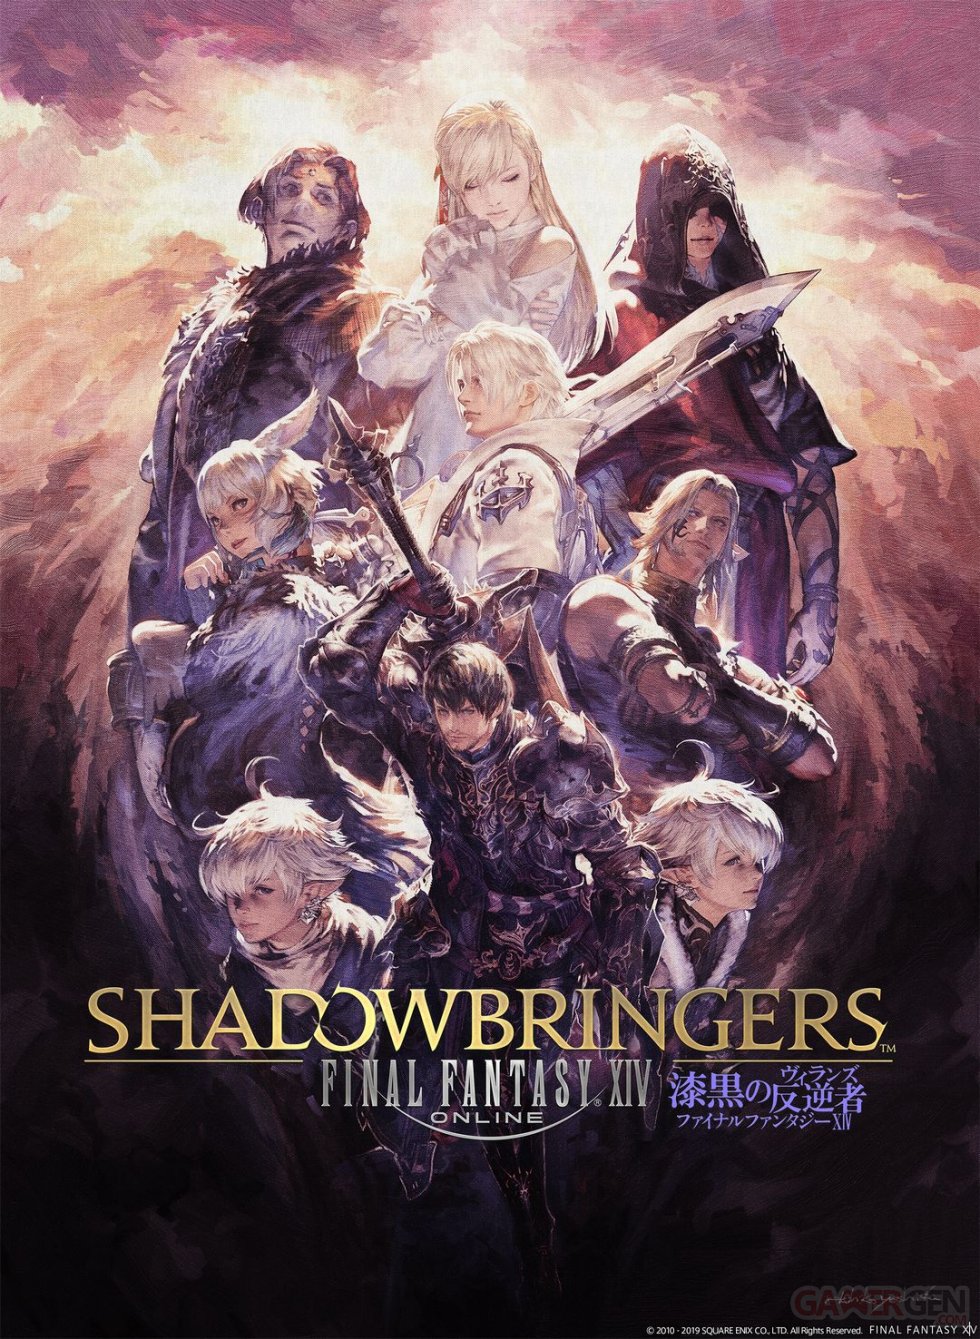 Final-Fantasy-XIV-Shadowbringers-artwork-02-02-2019